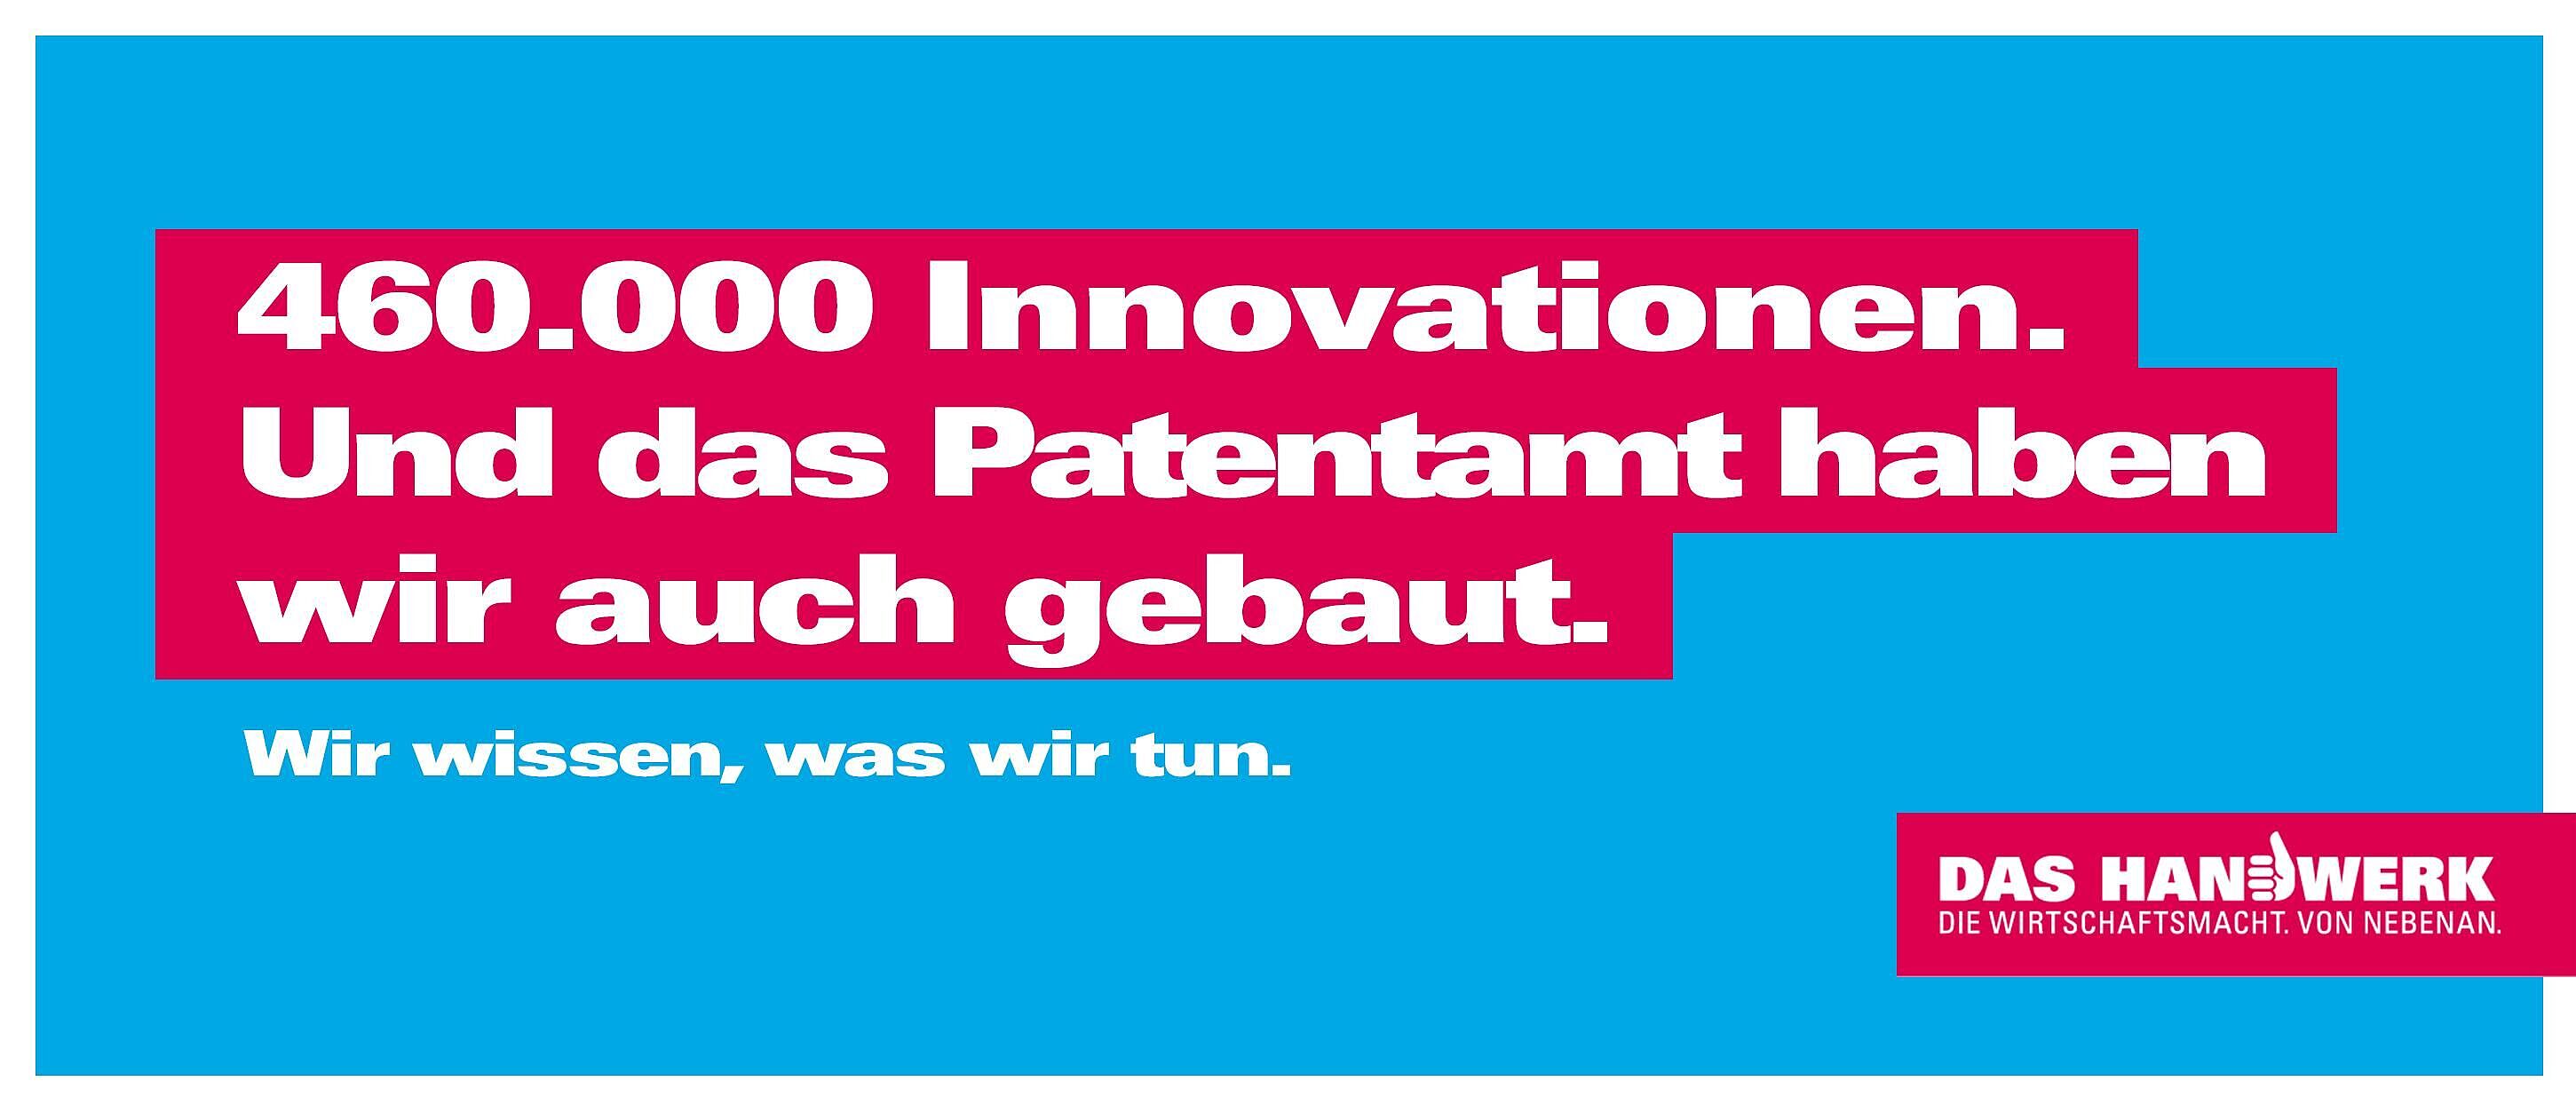 Hellblauer Hintergrund darauf in weißer Schrift mit roten Hintergrund: 460.000 Innovationen. Und das Patentamt haben wir auch gebaut.